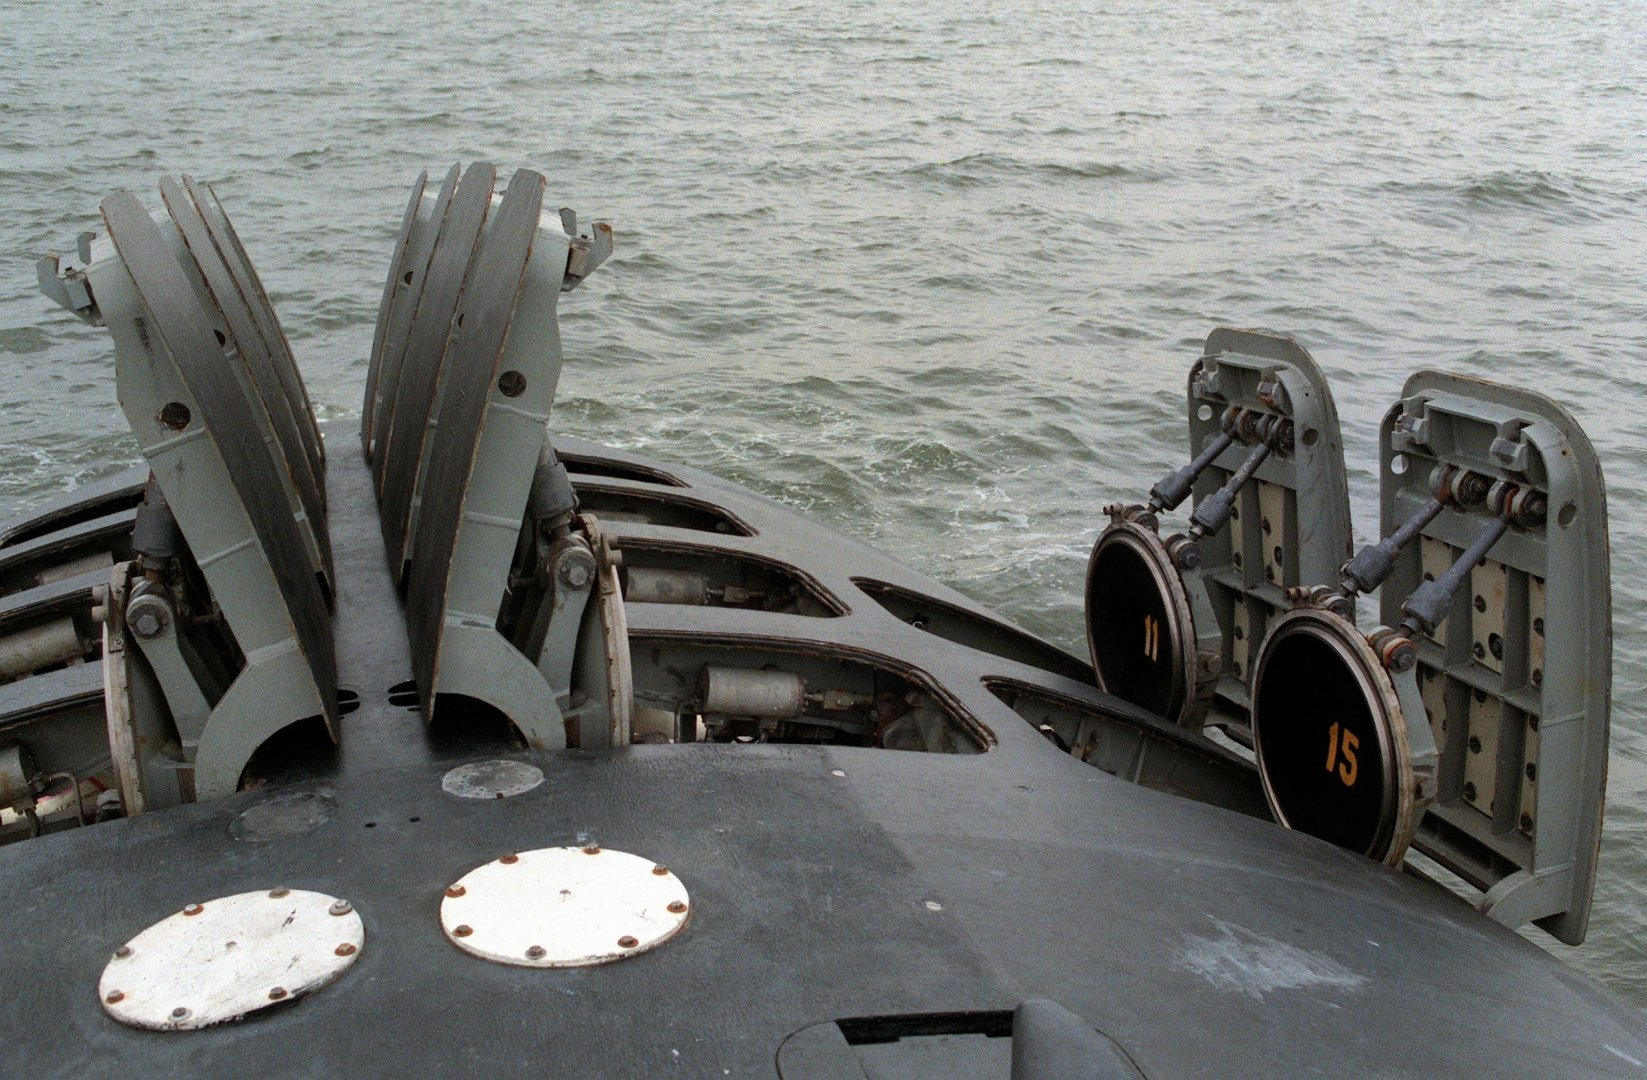 Противник утретє за останні півроку застосував підводні ракетні установки – Плетенчук